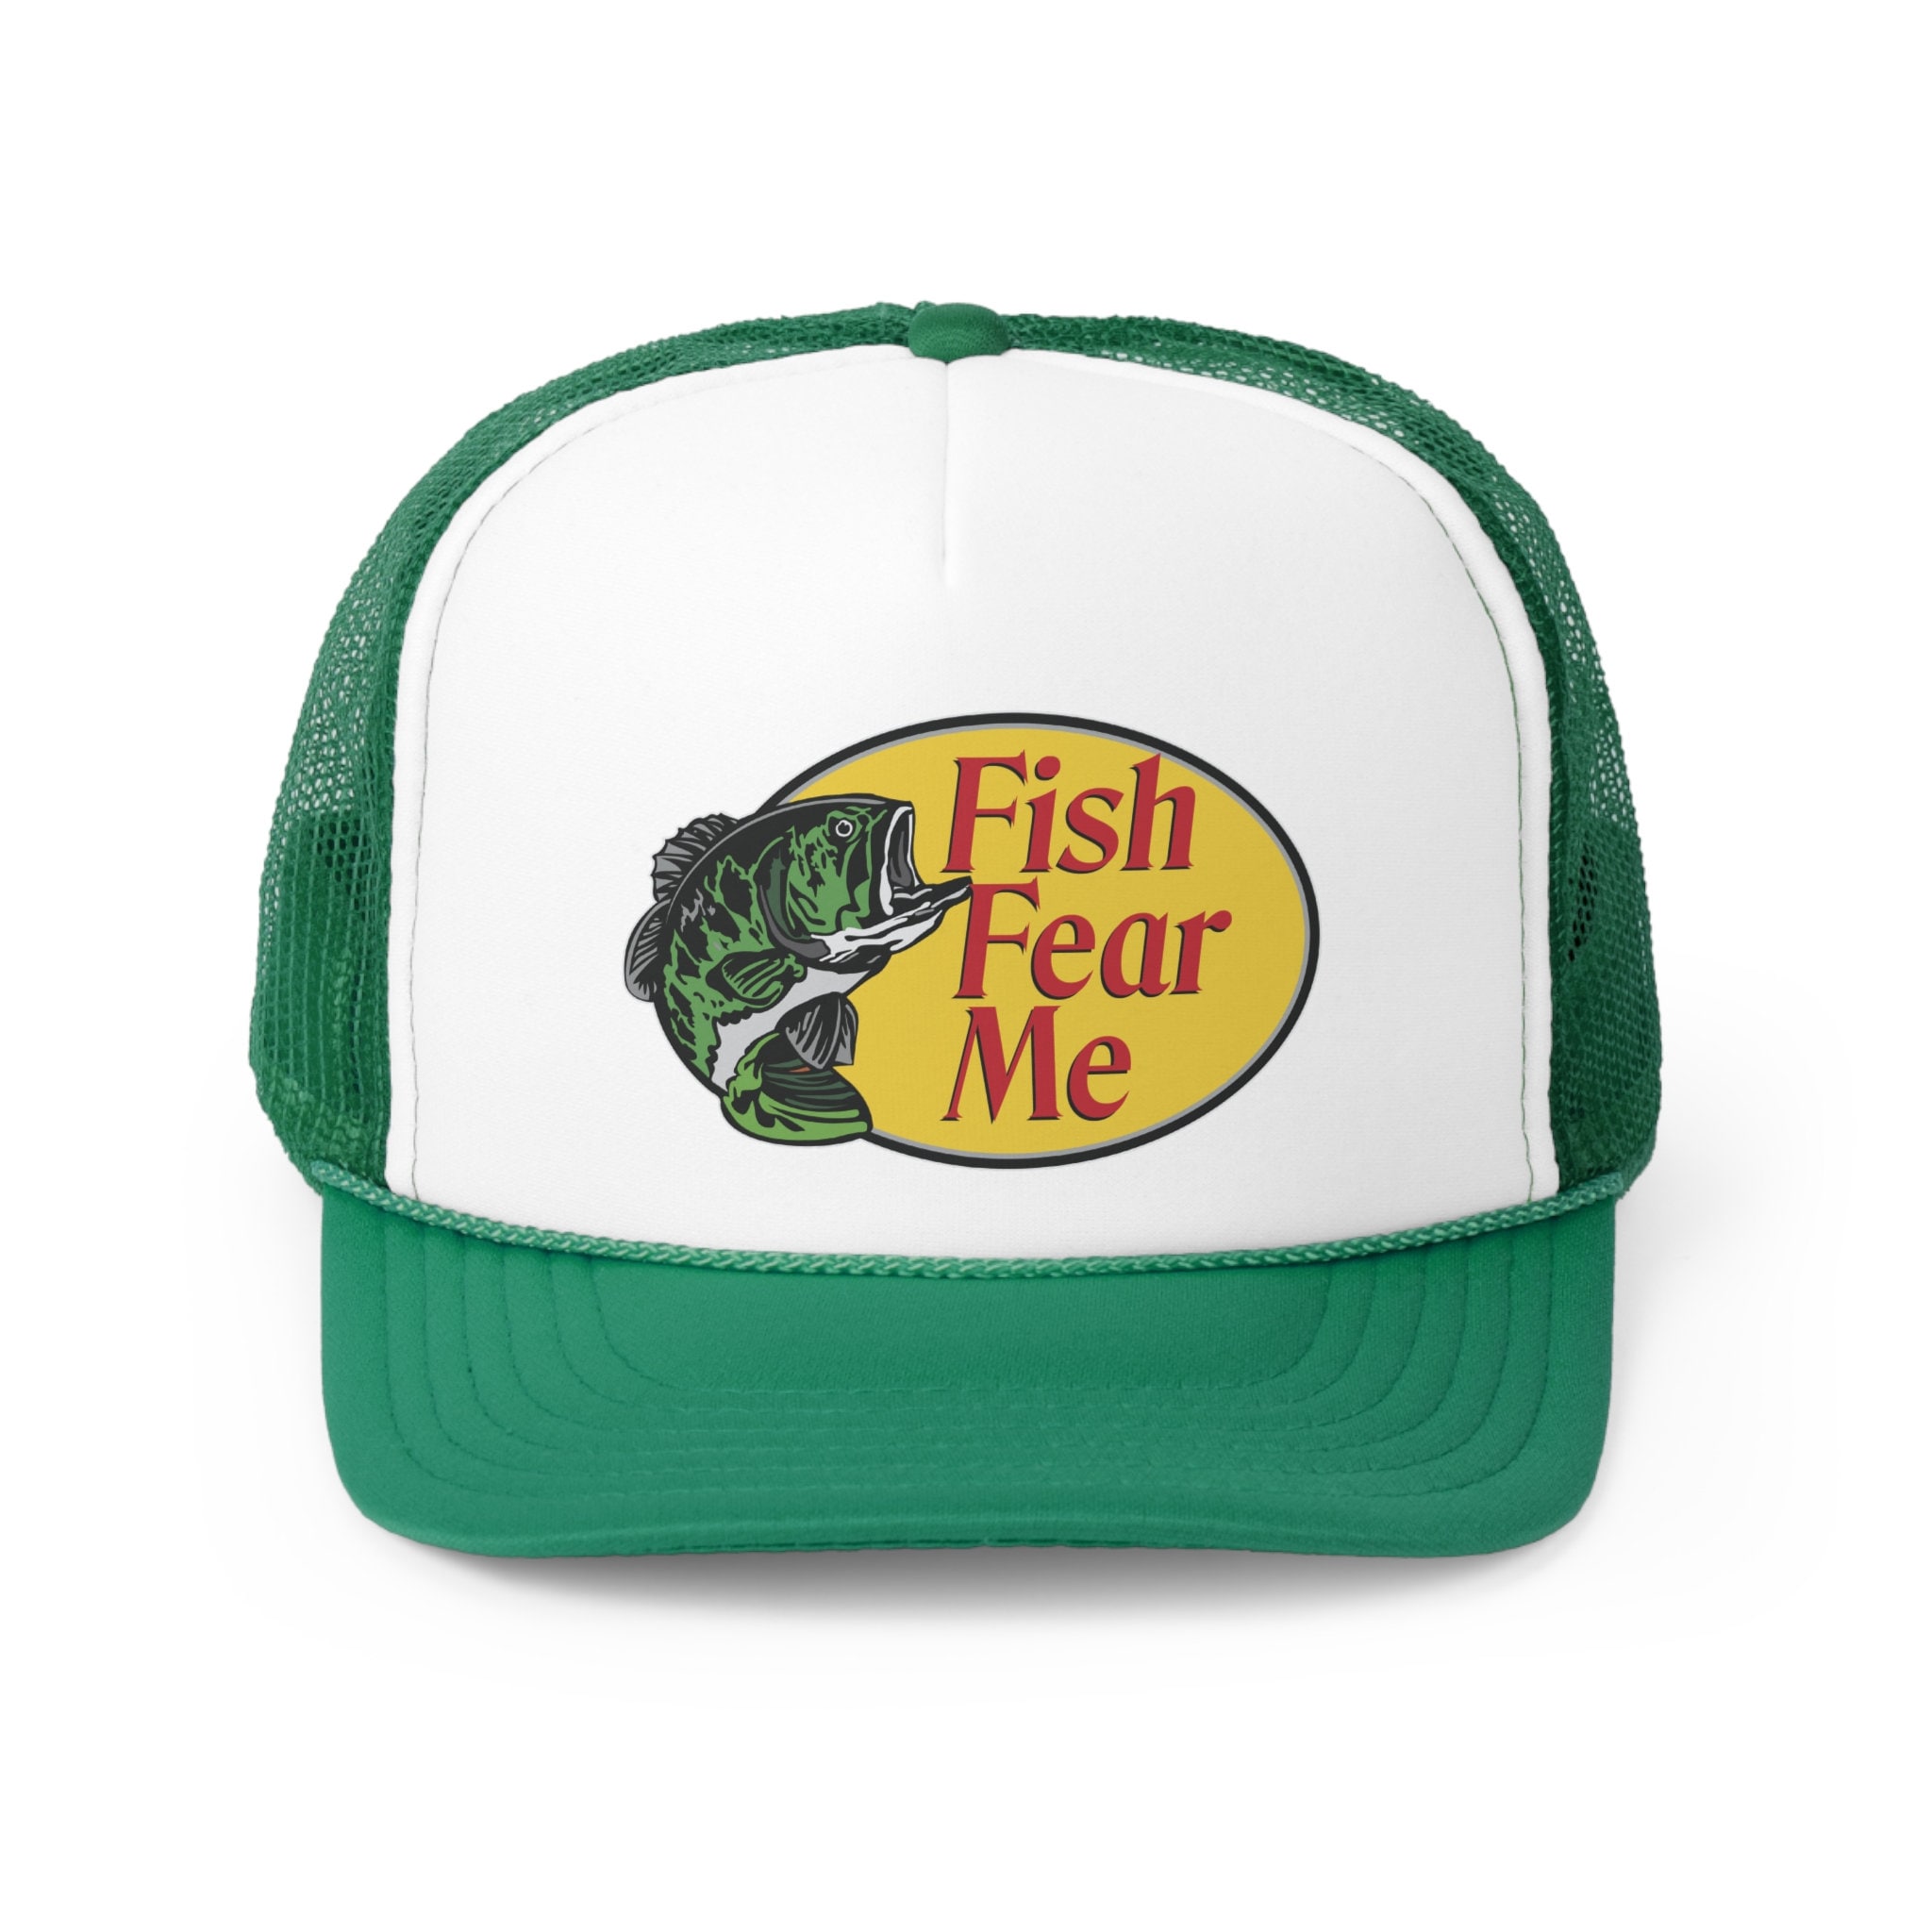 Fish Fear Me Custom Joke Trucker Hat (Bass Pro Shop Spoof)